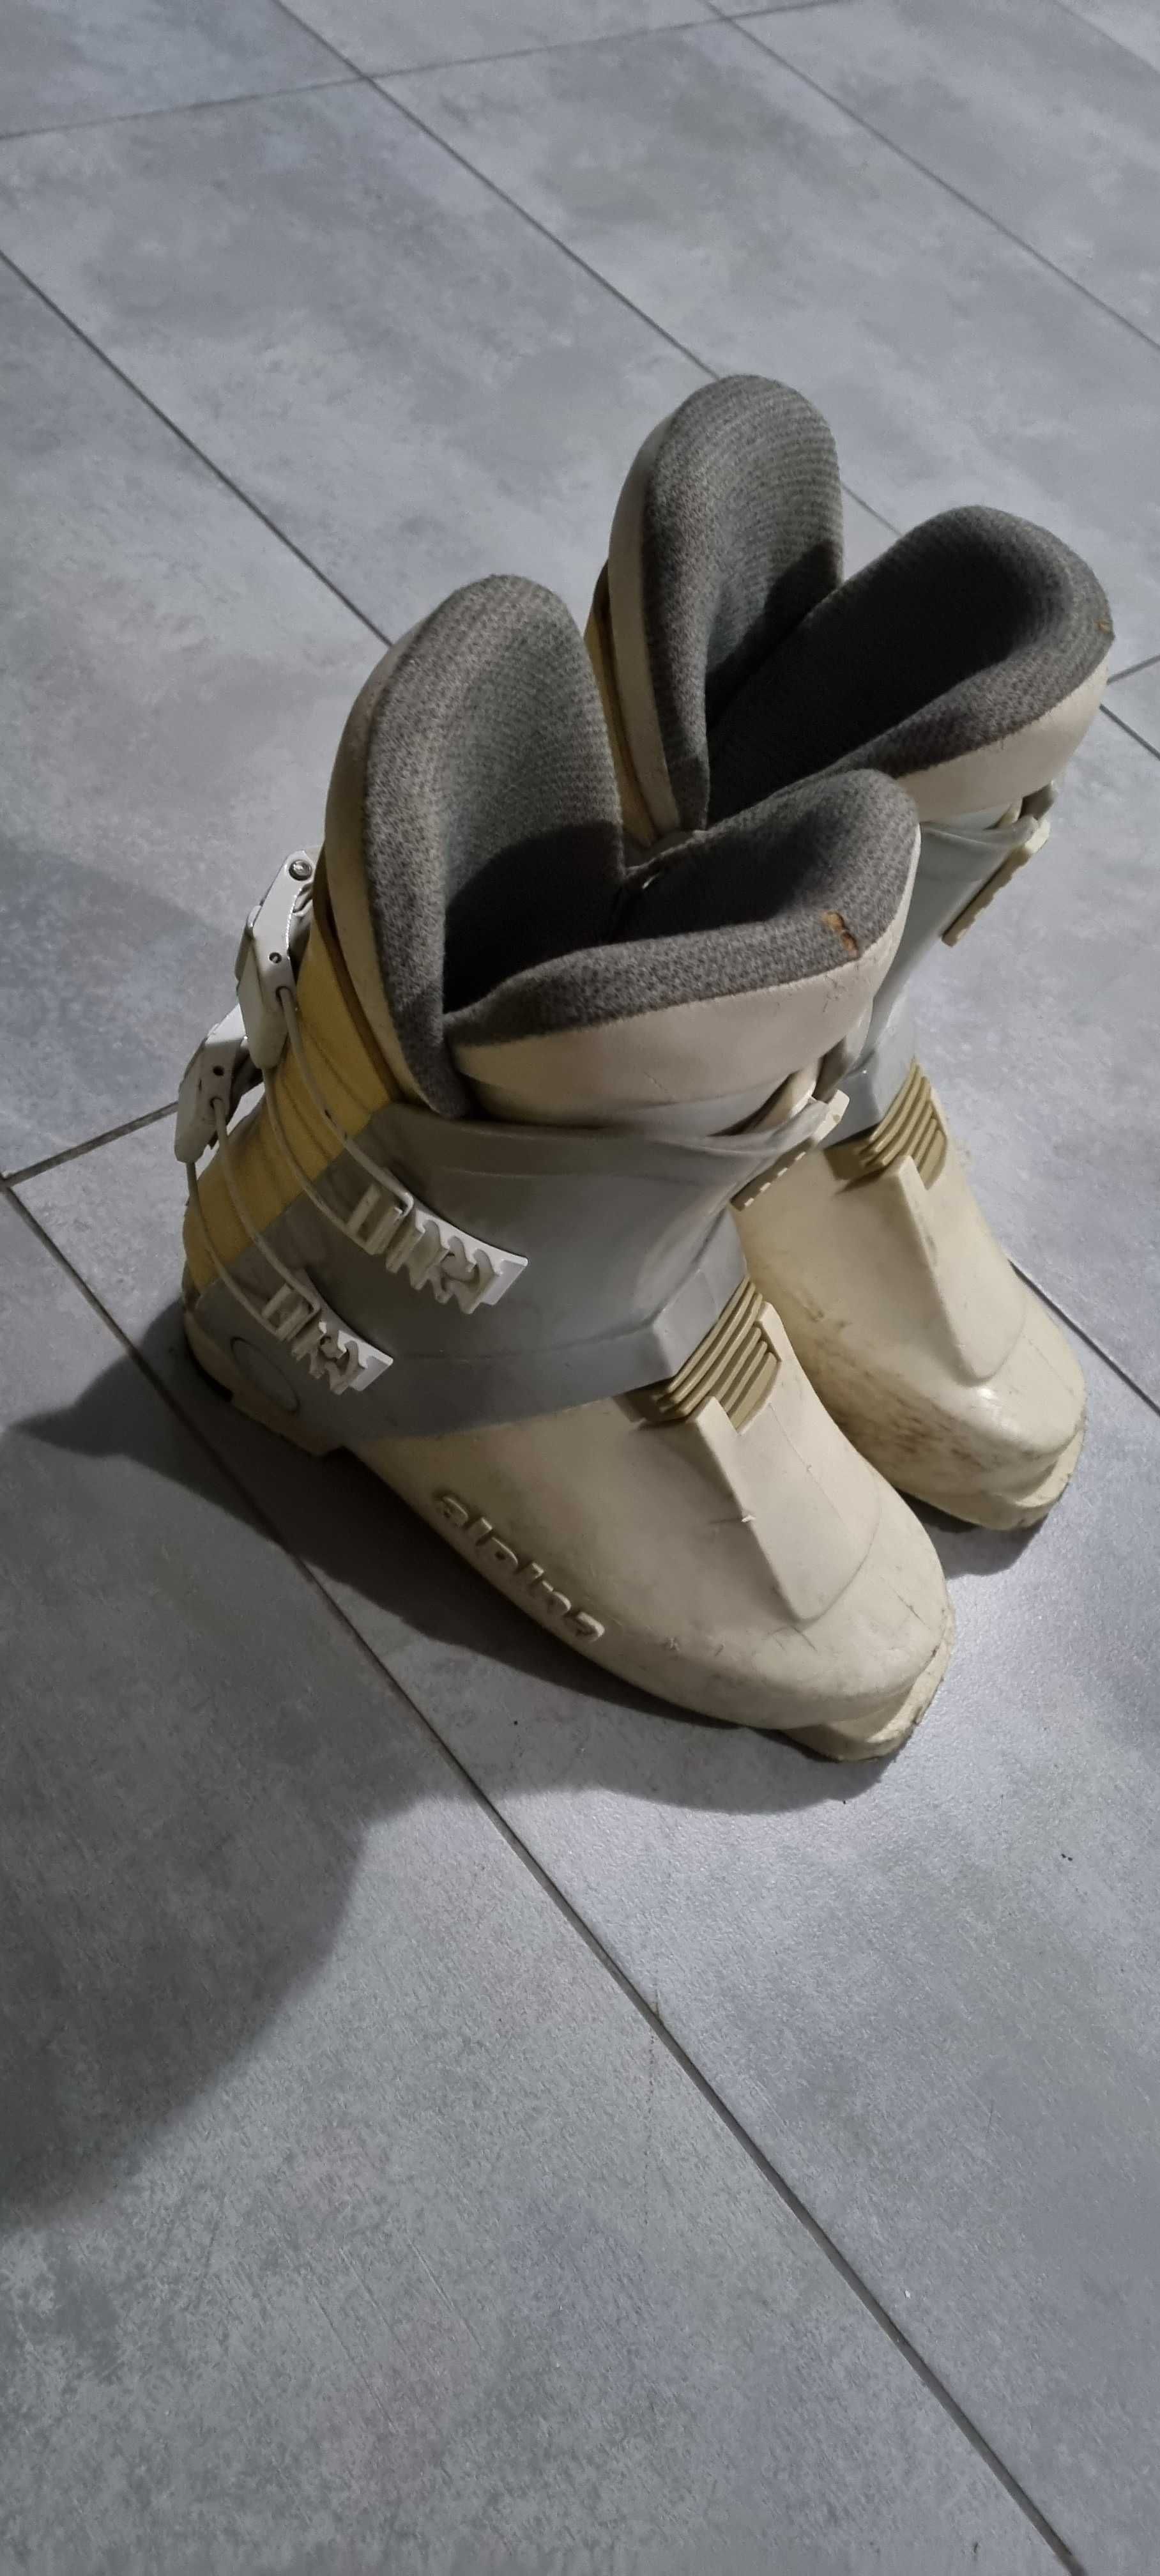 Buty narciarskie damskie dla początkujących Alpina